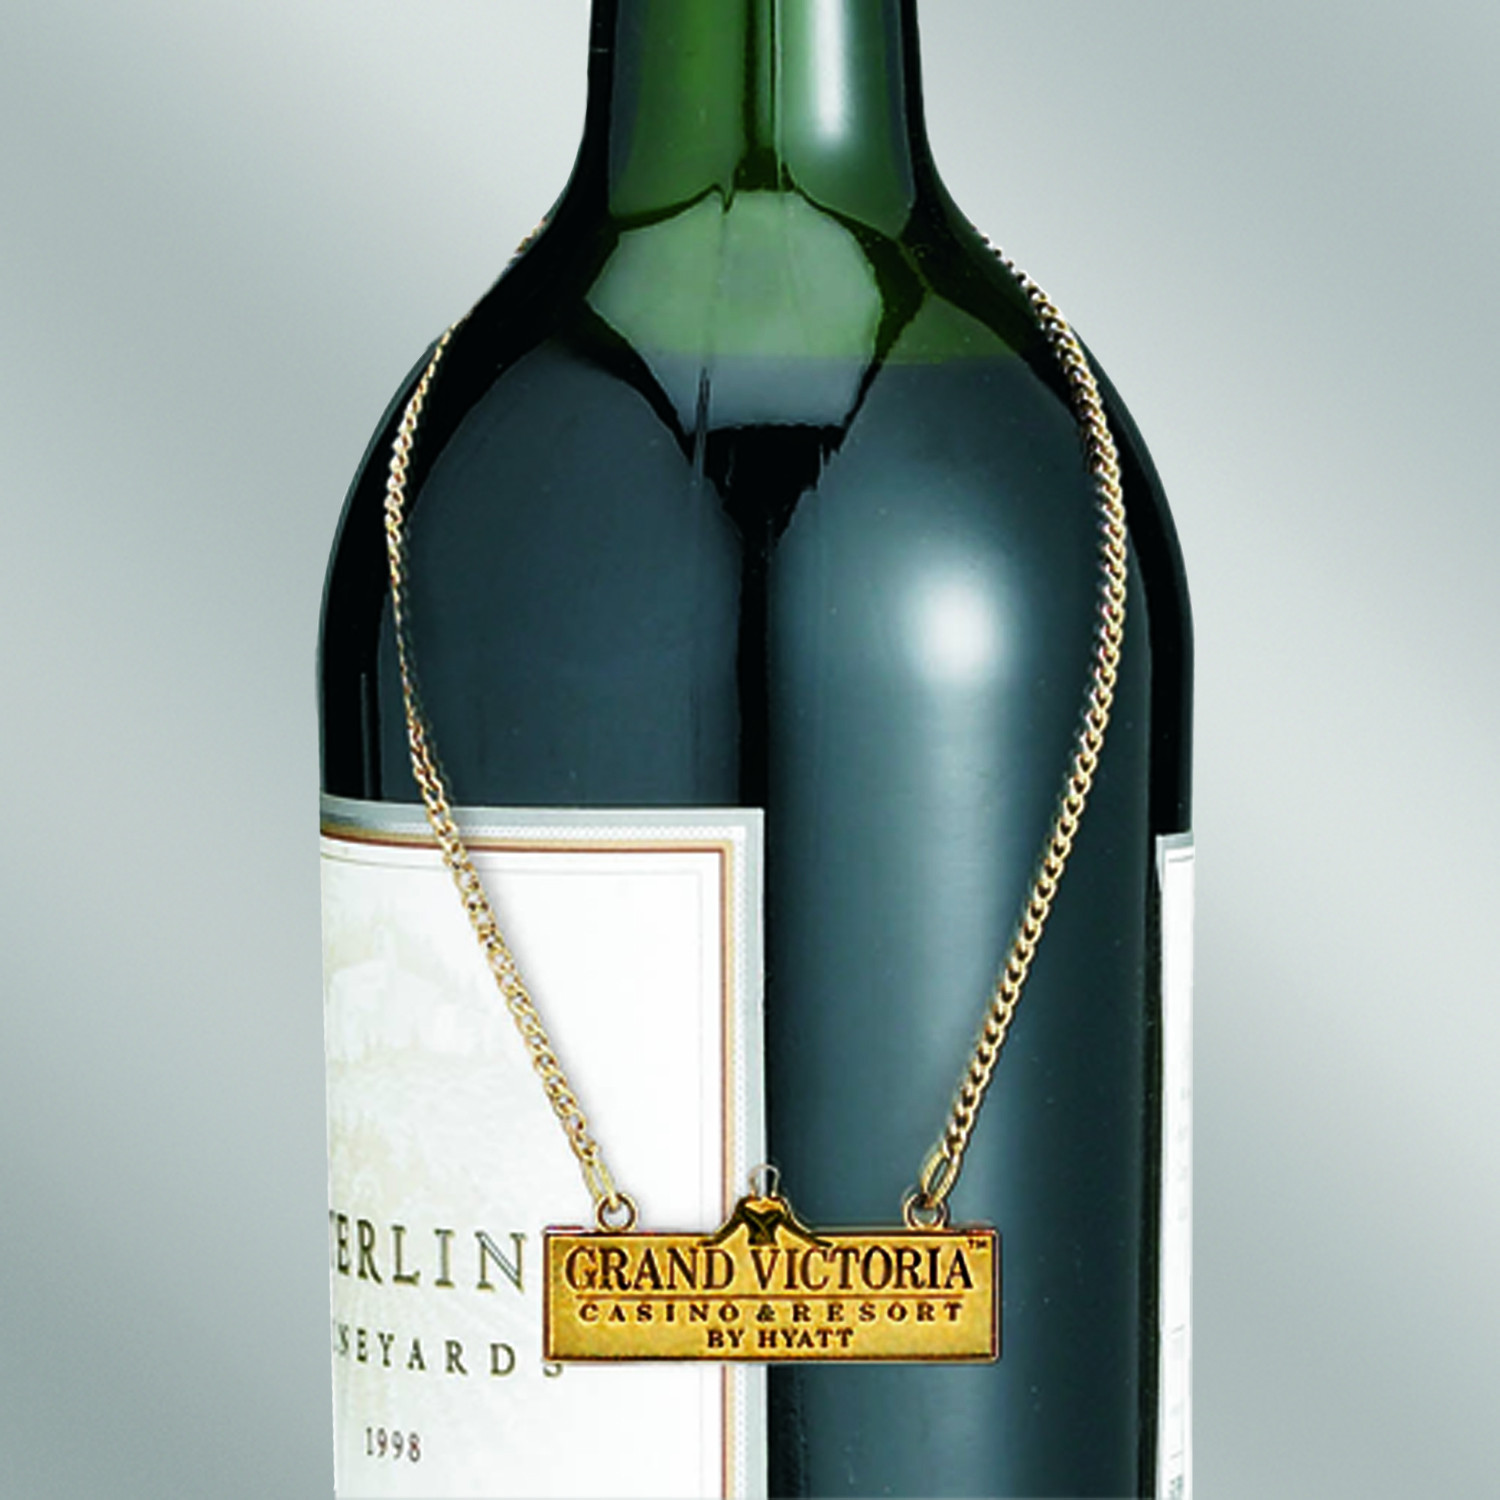 Wine Bottle Wine Charm